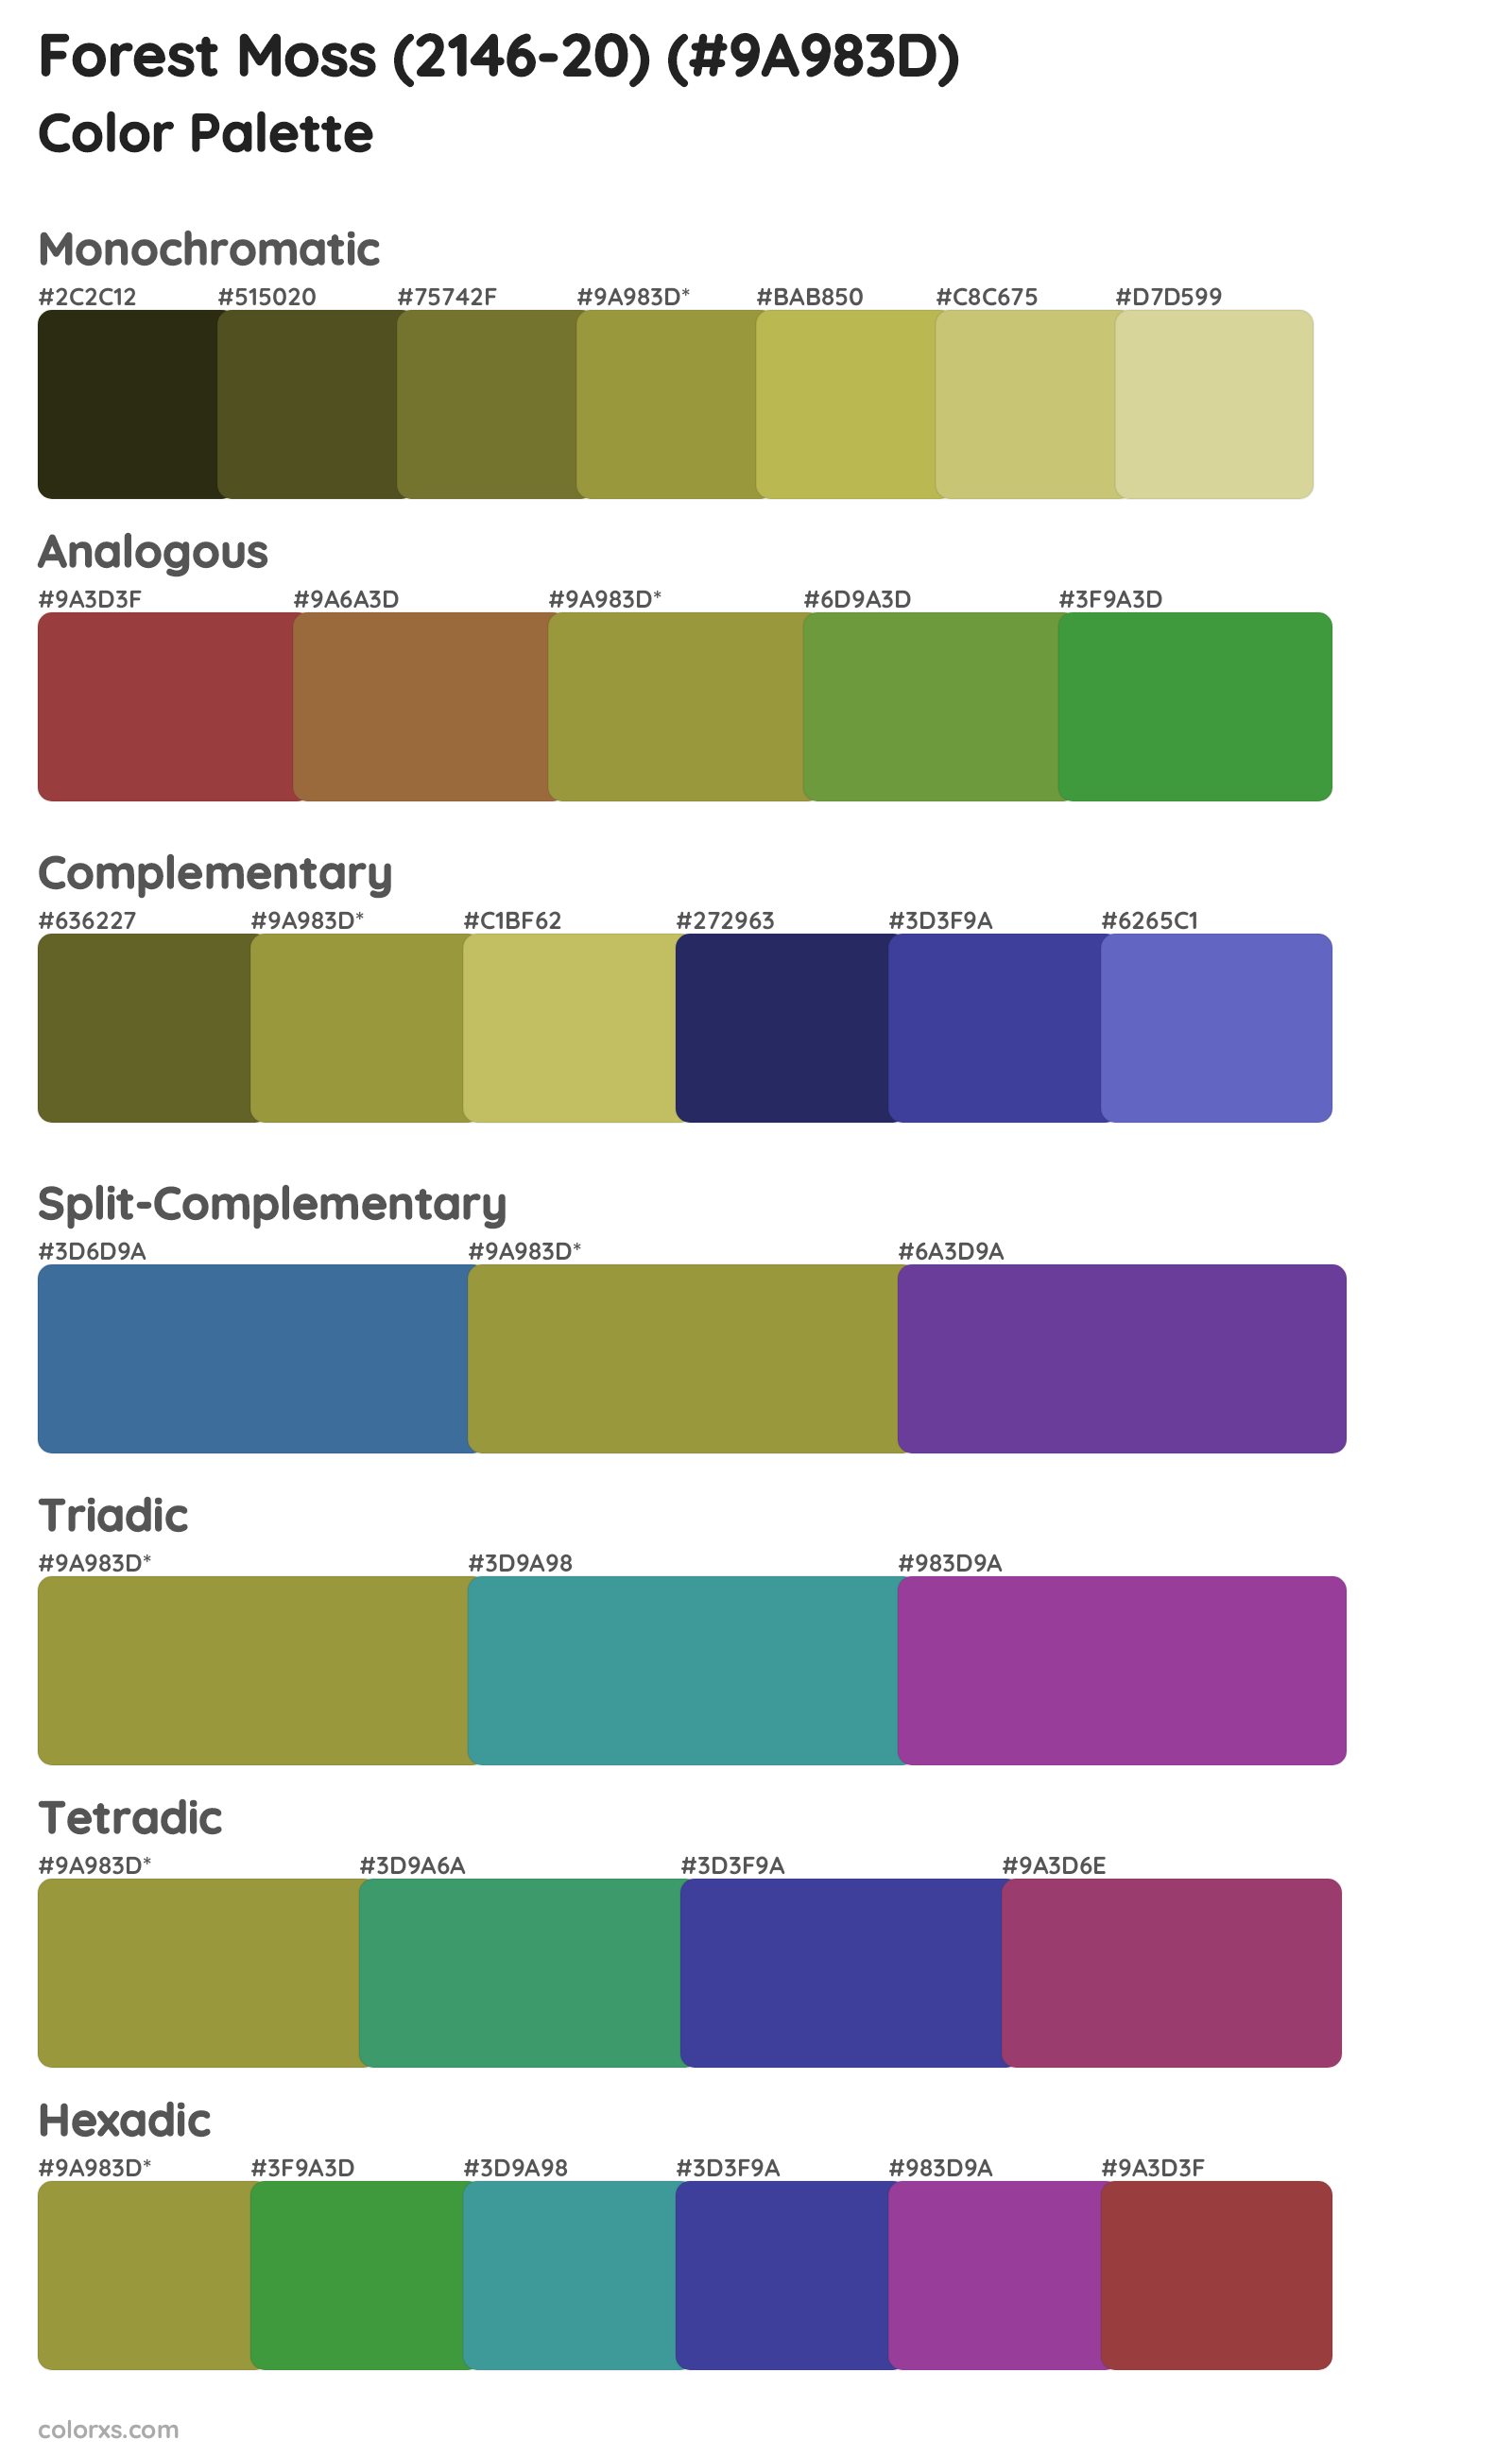 Forest Moss (2146-20) Color Scheme Palettes